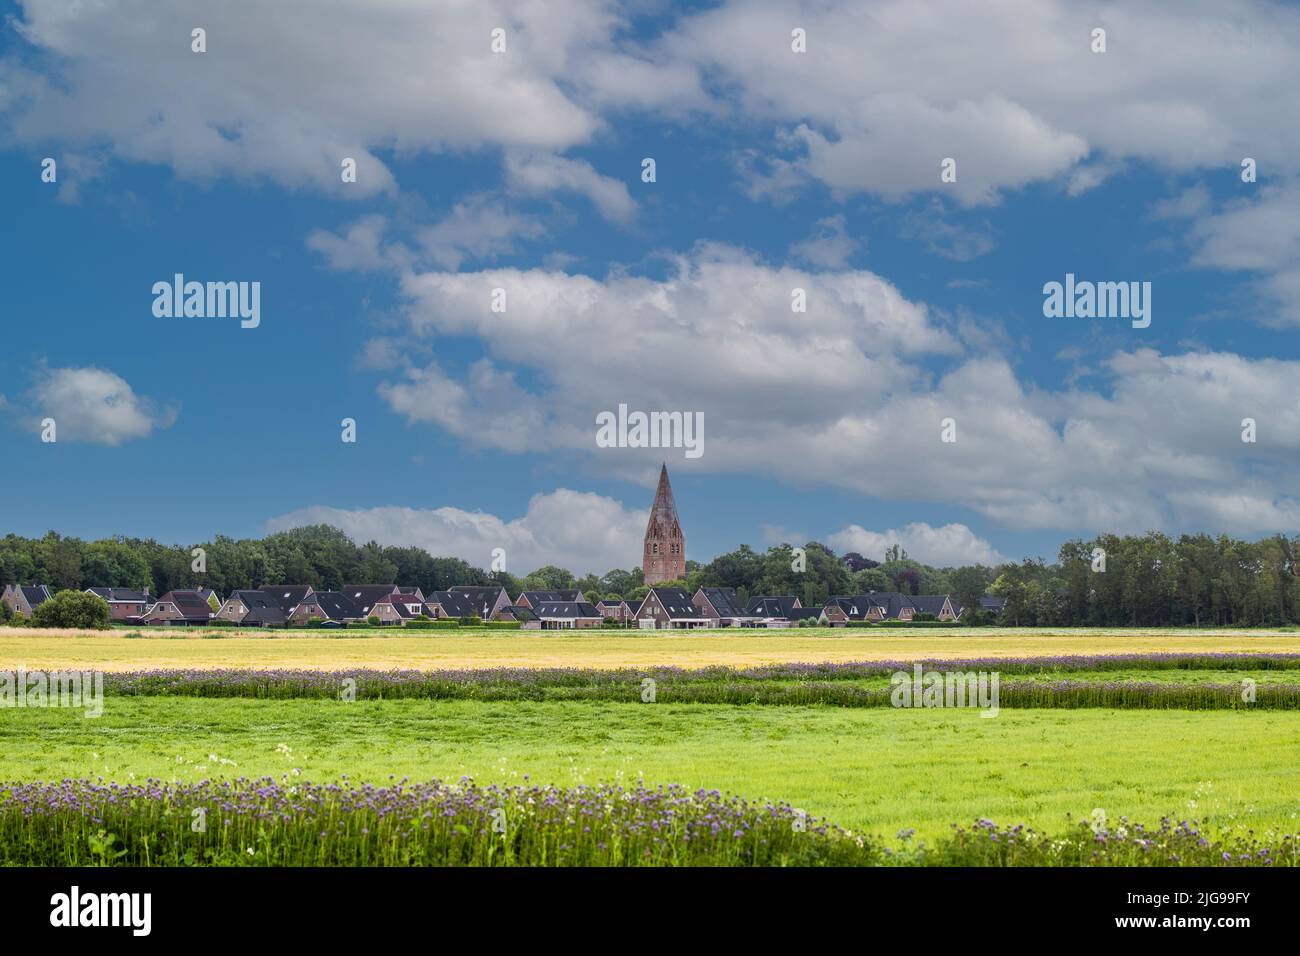 Paesaggio della provincia olandese di Groningen con uno skyline del villaggio di Schildwolde con case e un distaccato cosiddetto Juffertoren, una chiesa t Foto Stock